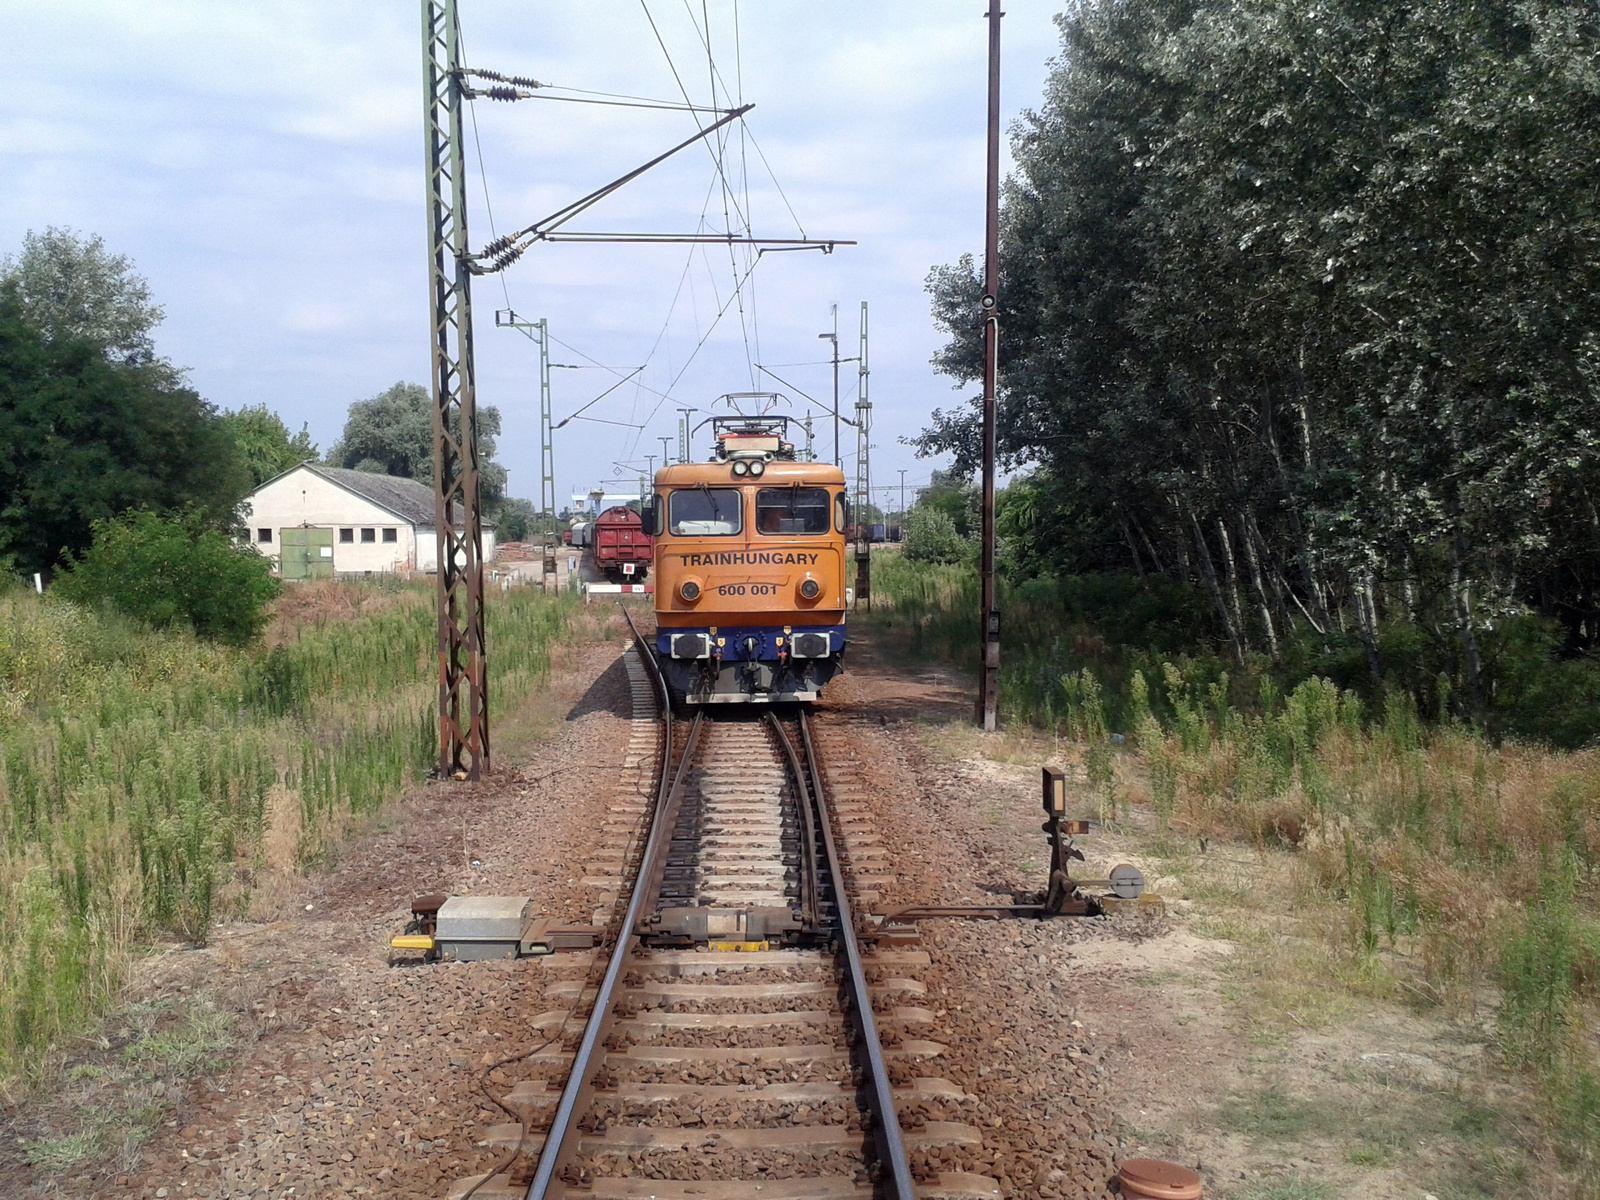 600 001 /Train Hungary/